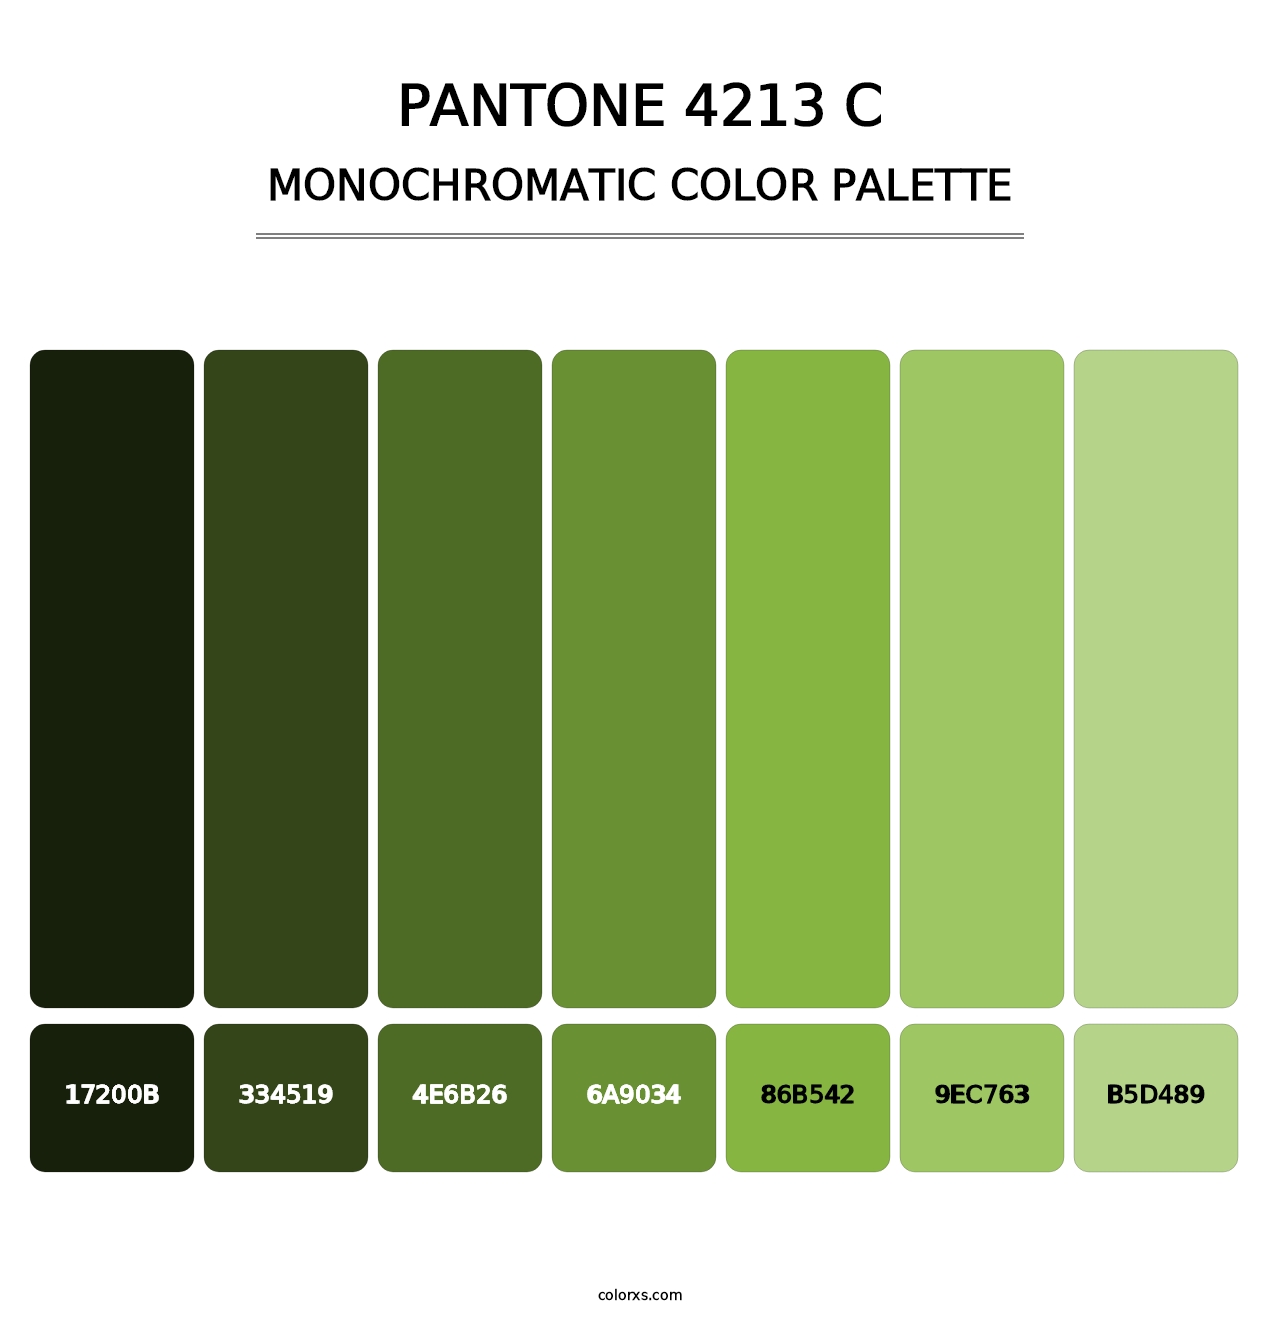 PANTONE 4213 C - Monochromatic Color Palette